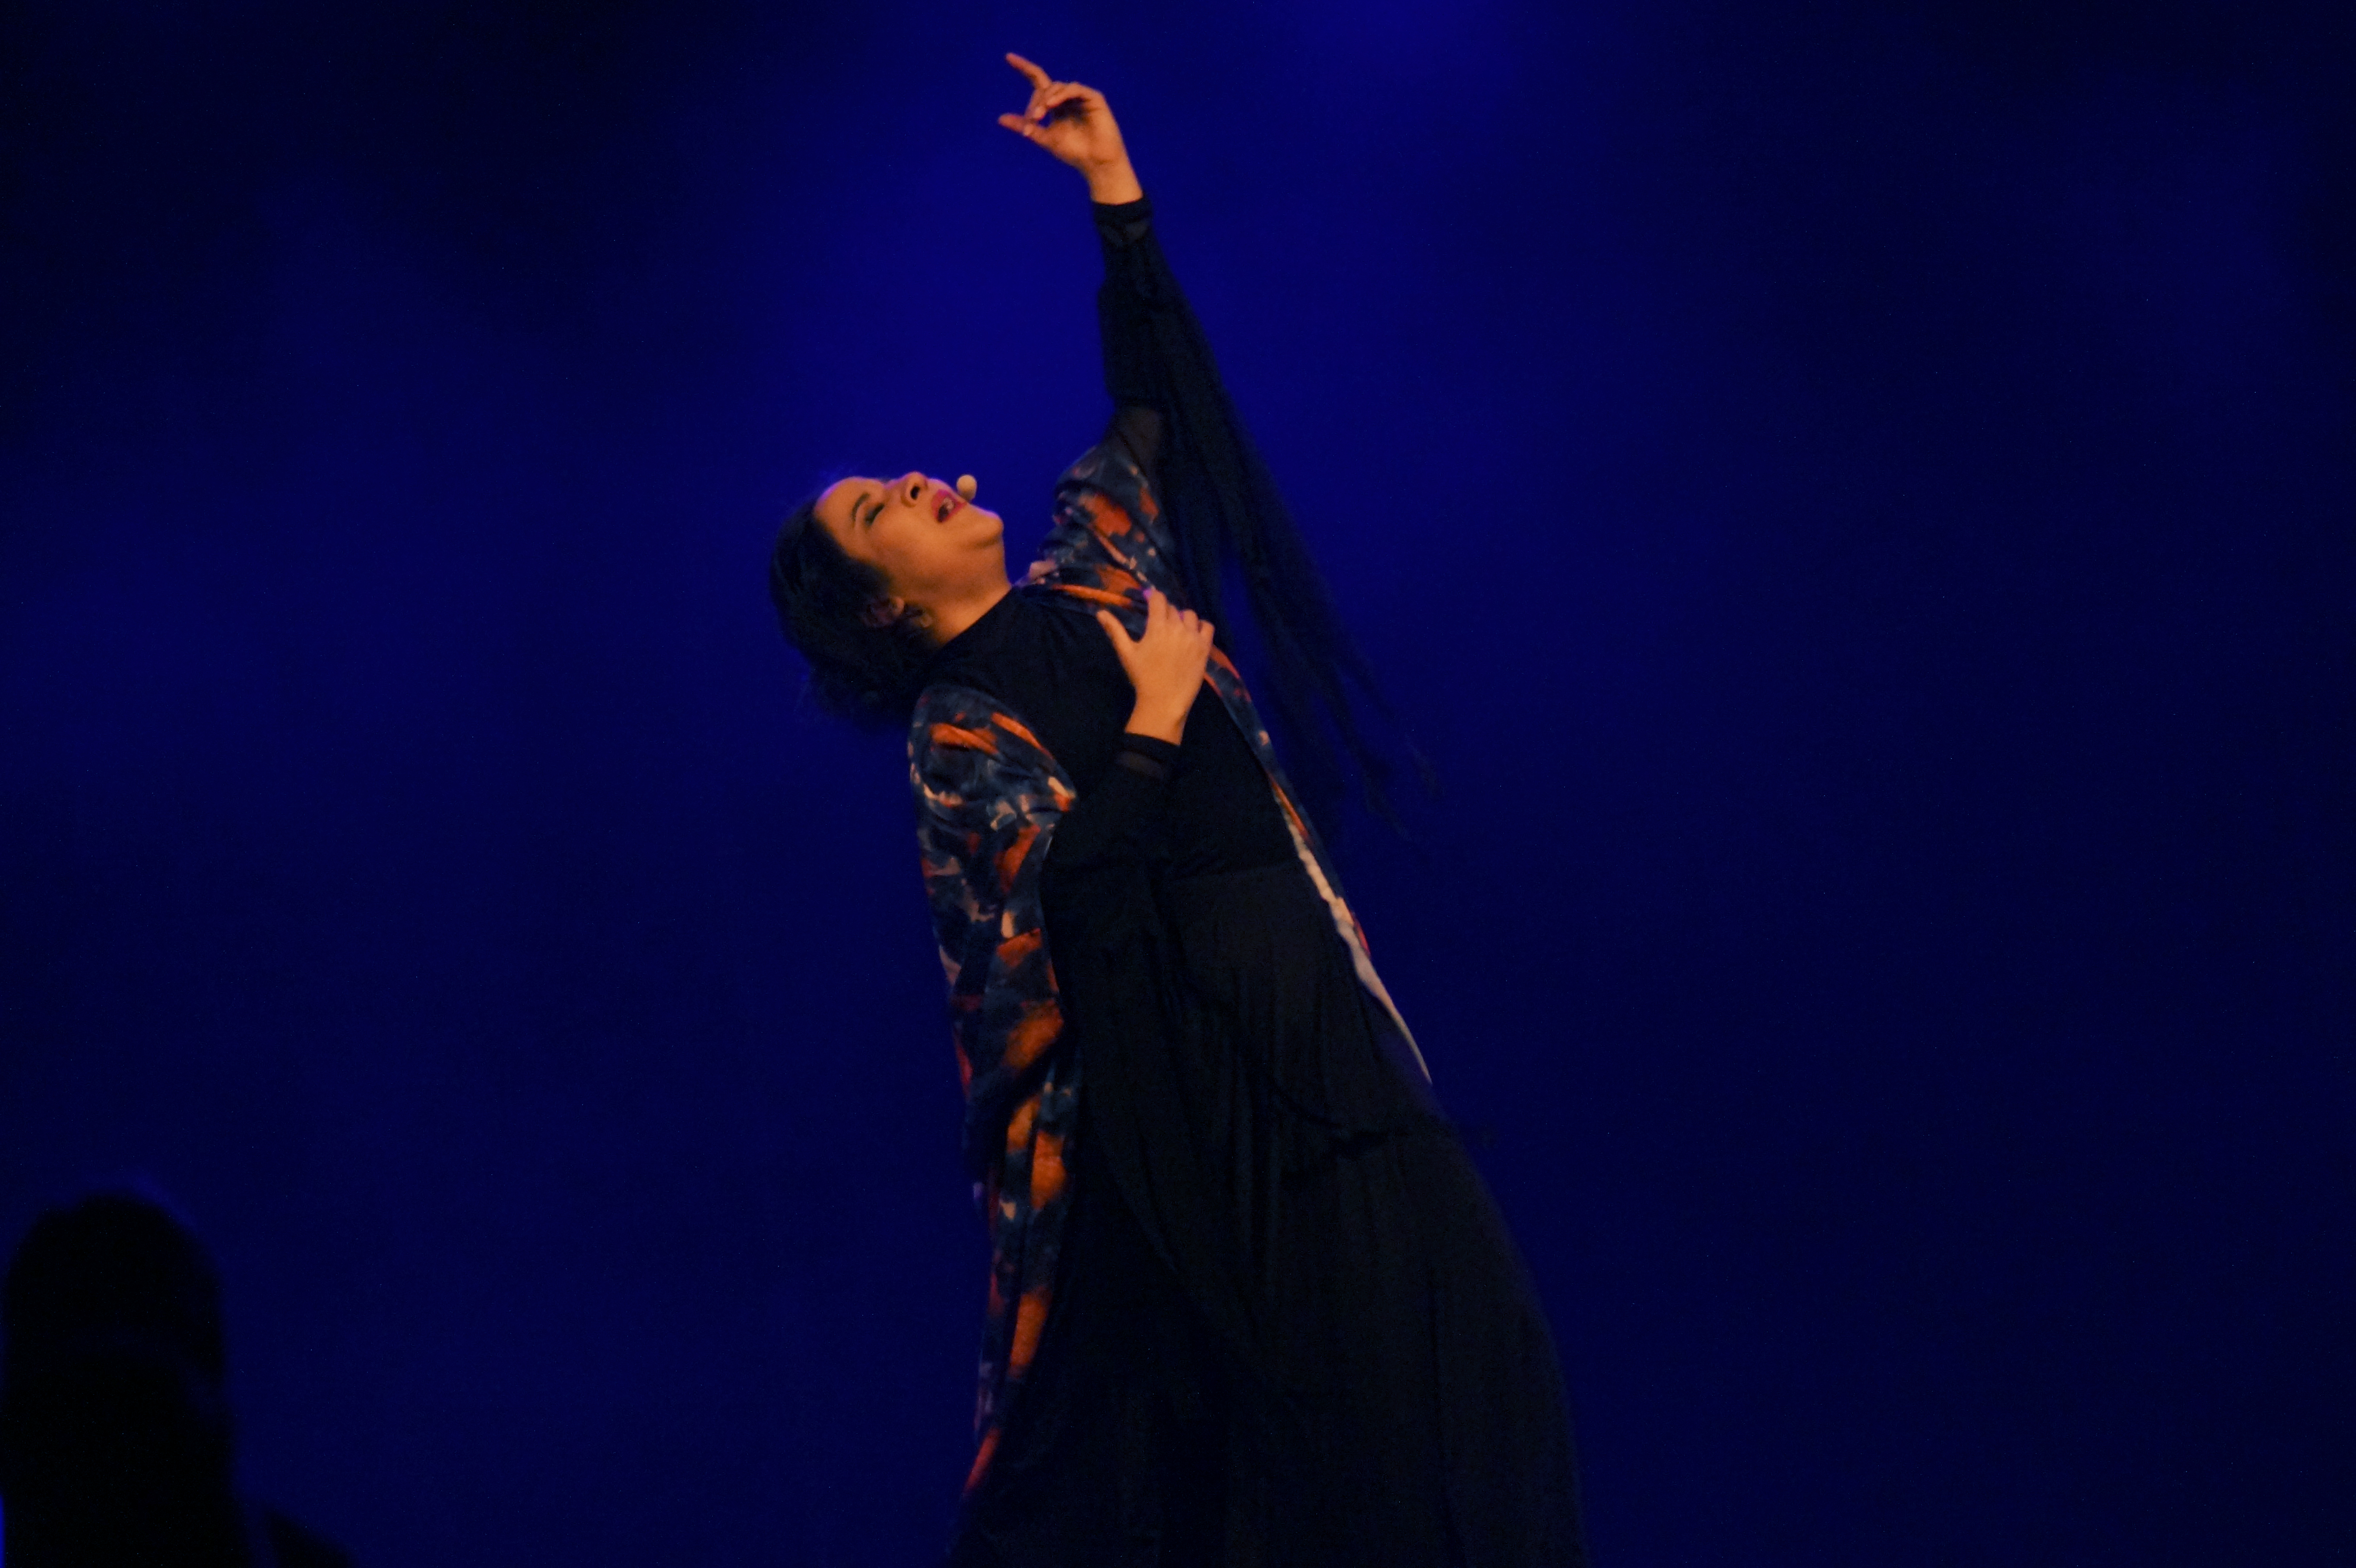 En kvinna står i dramatisk pose  på en scen och sjunger